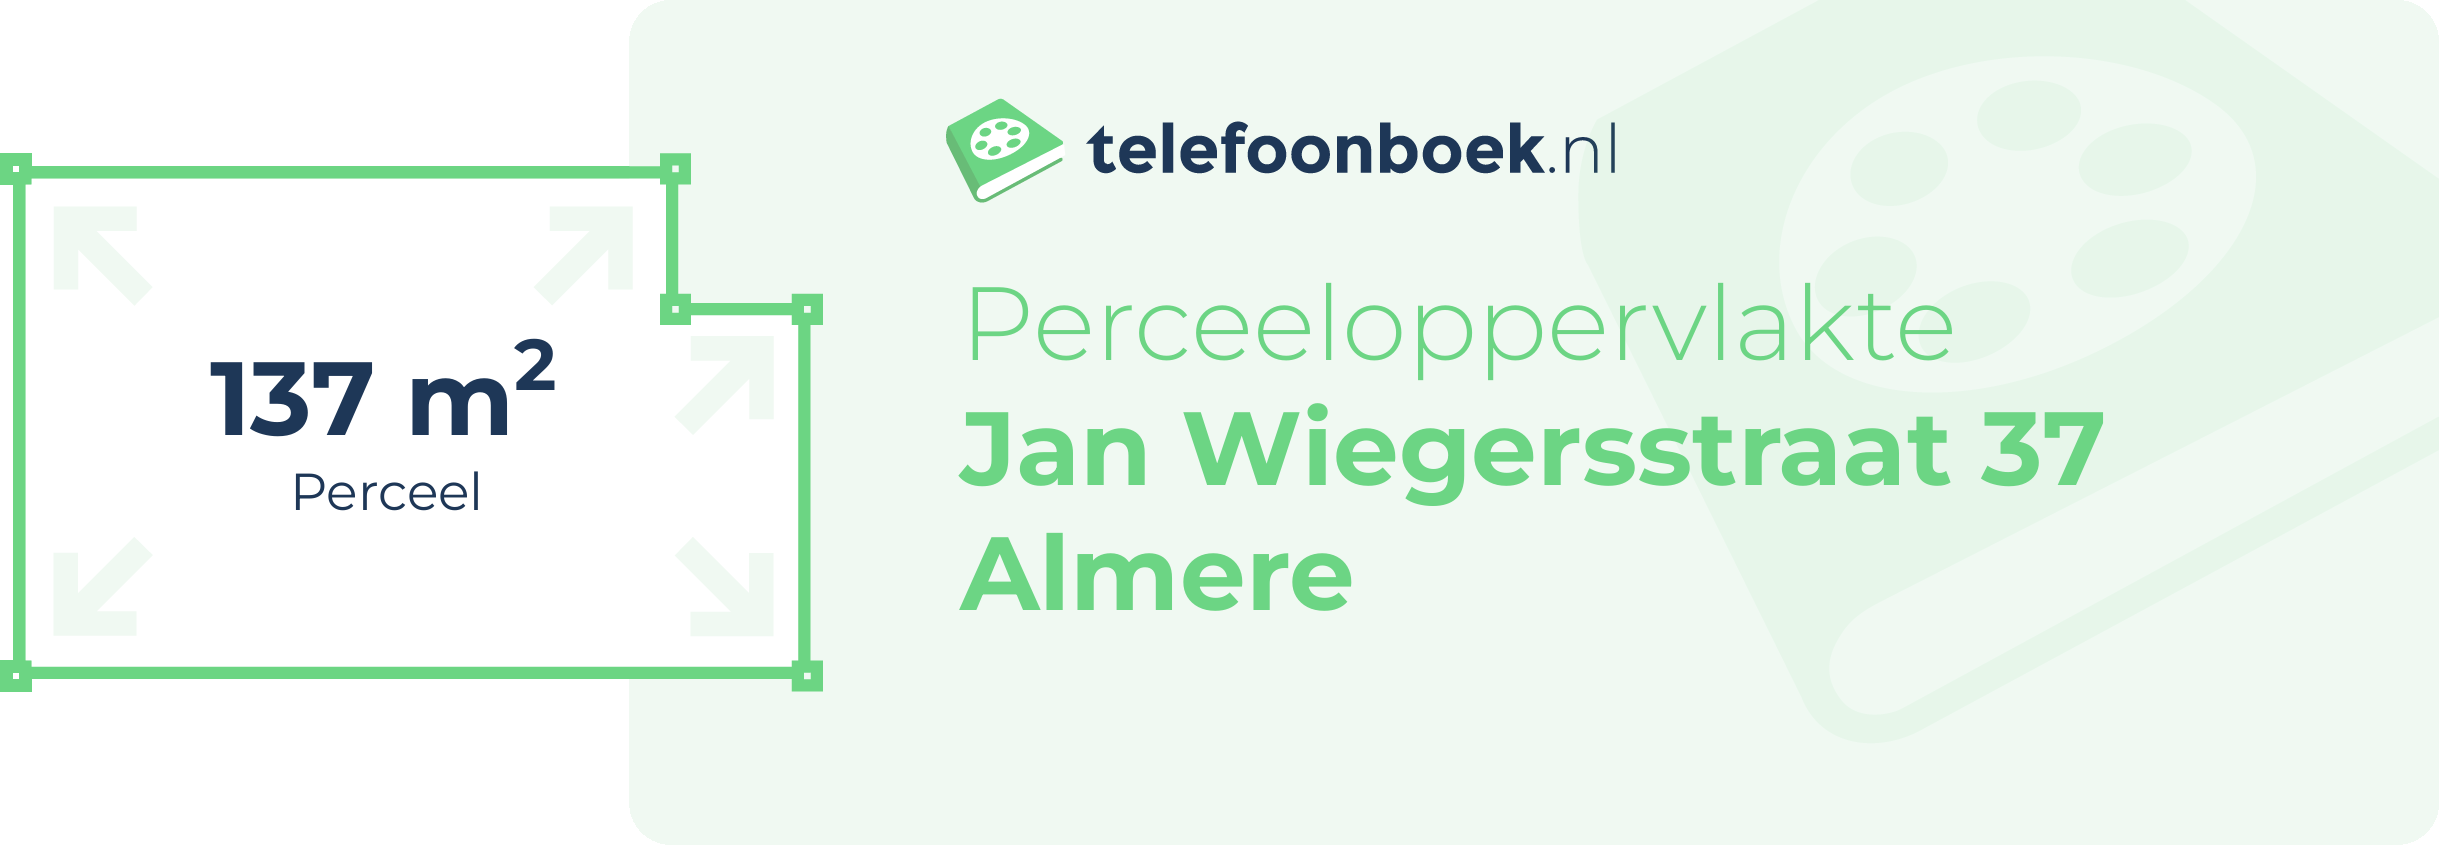 Perceeloppervlakte Jan Wiegersstraat 37 Almere